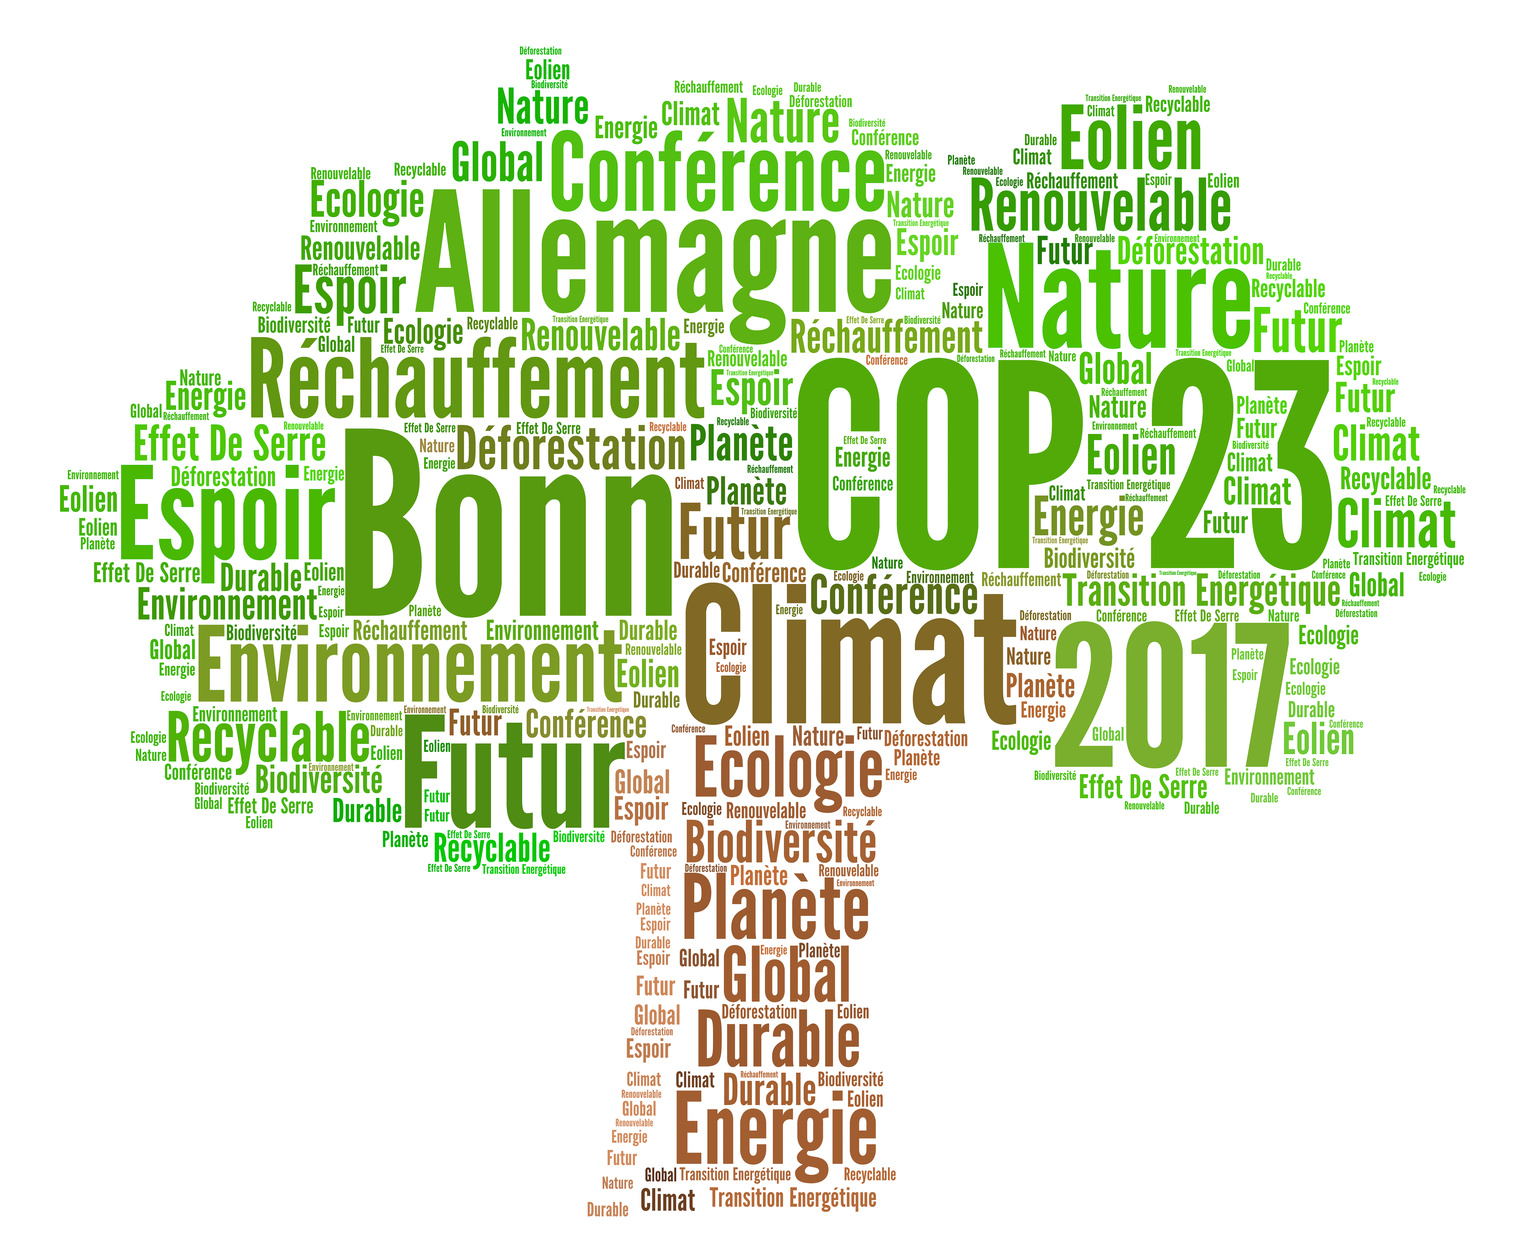 COP 23